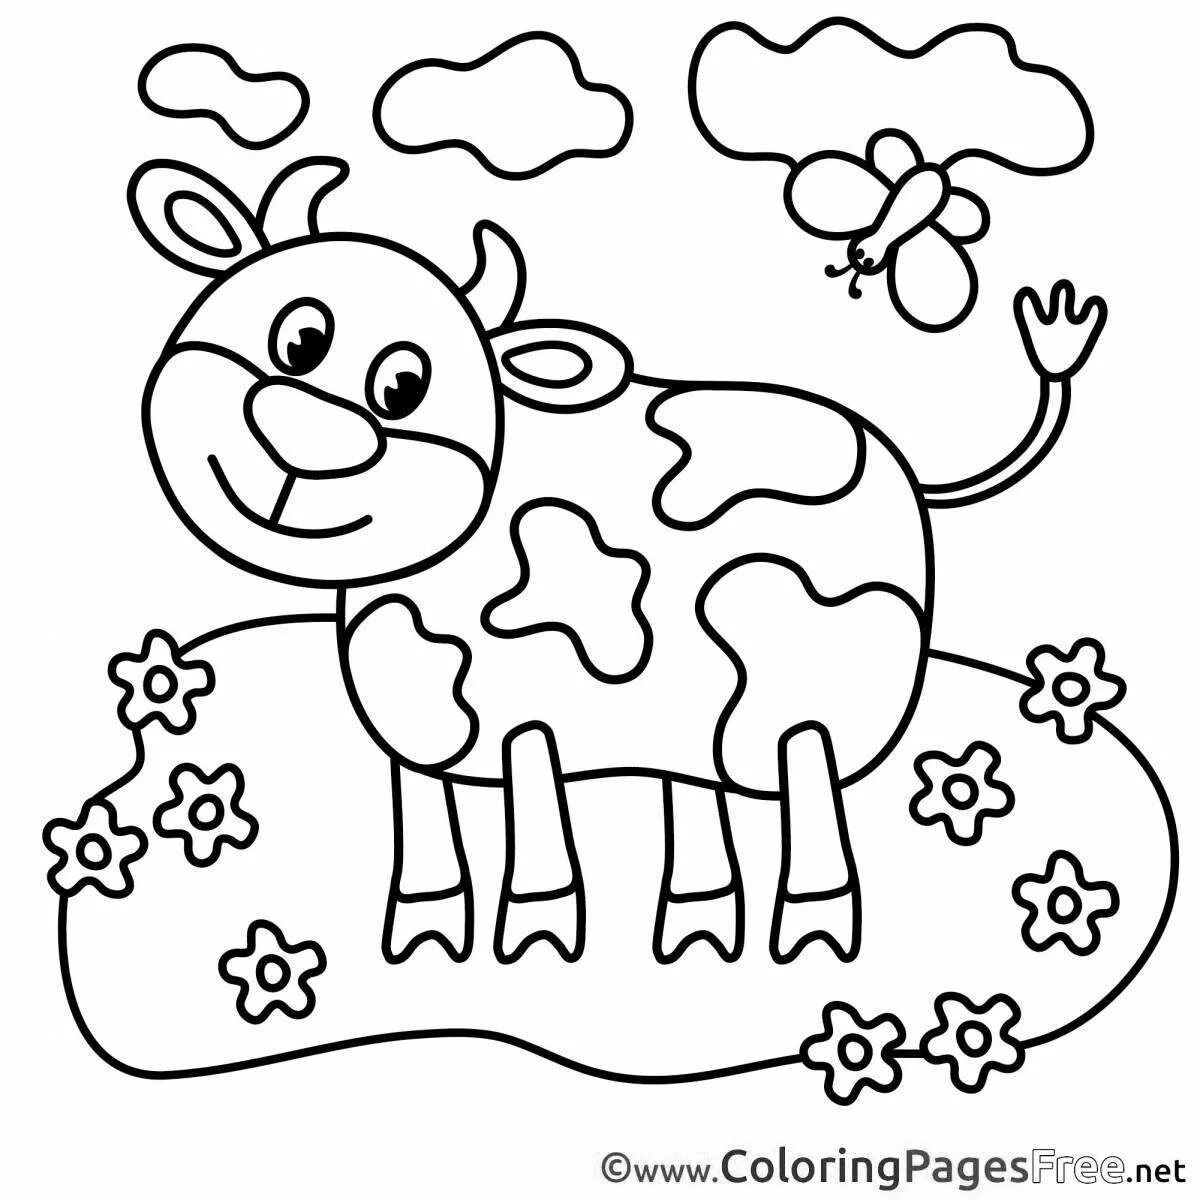 Раскраски для детей 3 года коровы. Раскраска корова. Корова раскраска для детей. Корова раскраска для малышей. Корова раскраска для детей 2-3 лет.